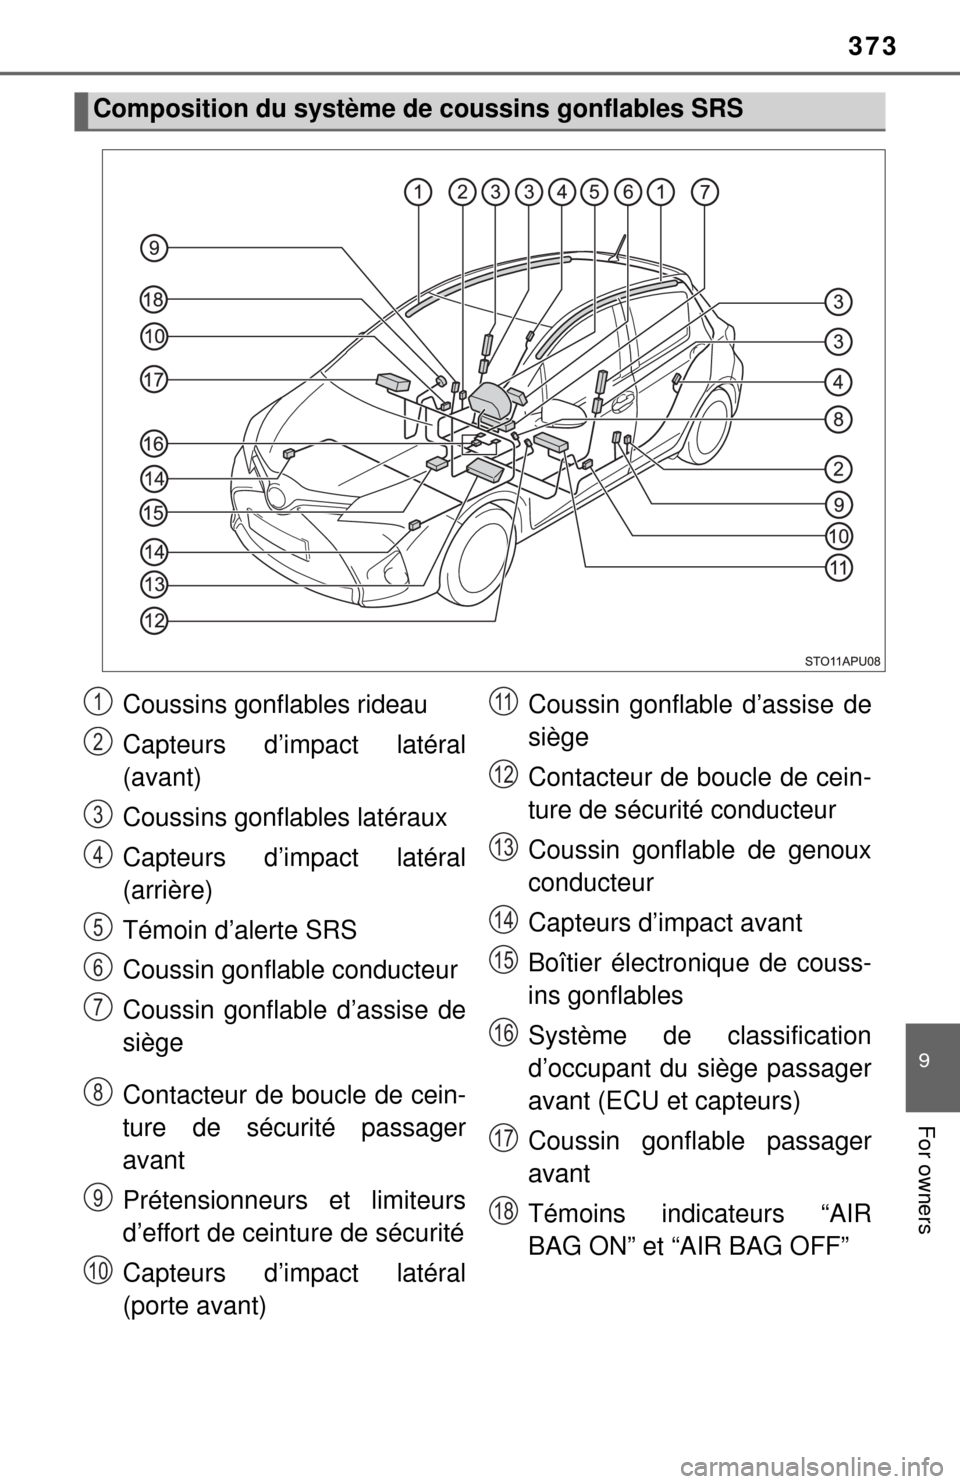 TOYOTA YARIS 2017 3.G Owners Manual 373
9
For owners
Composition du système de coussins gonflables SRS
Coussins gonflables rideau
Capteurs d’impact latéral
(avant)
Coussins gonflables latéraux
Capteurs d’impact latéral
(arrière